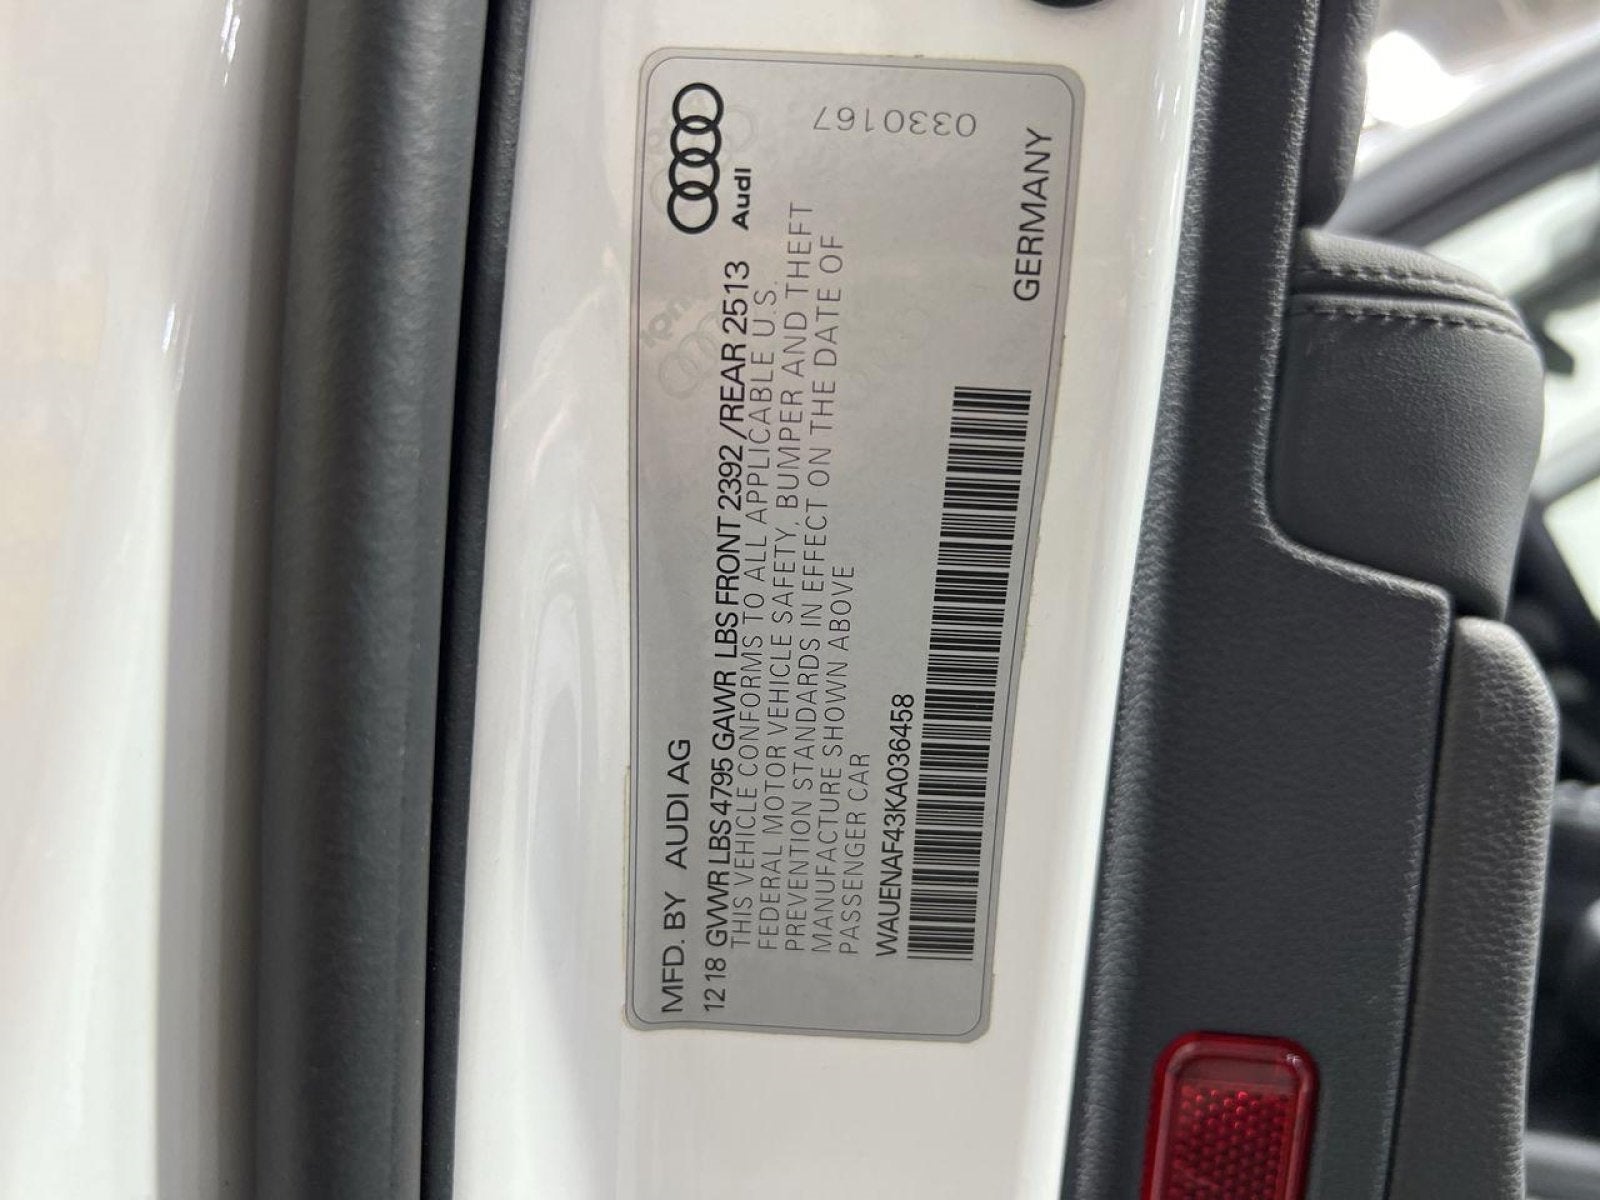 2019 Audi A4 2.0T Premium Plus